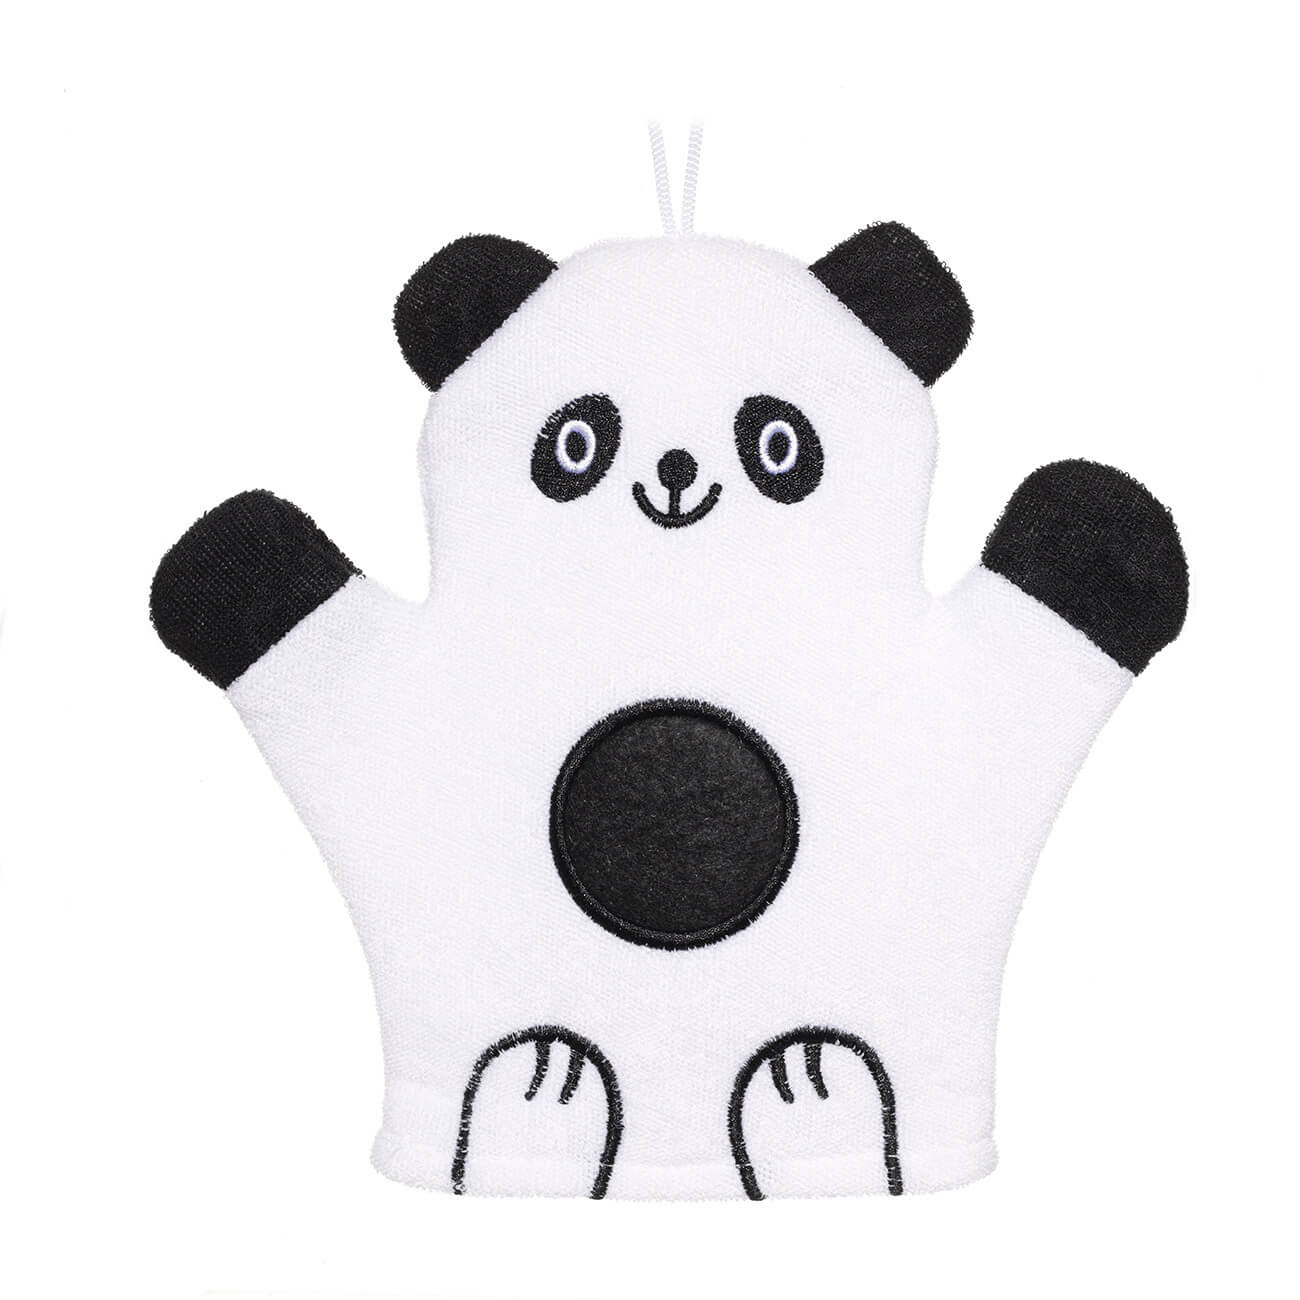 Мочалка-варежка для мытья тела, 20х20 см, детская, полиэстер, черно-белая, Панда, Panda